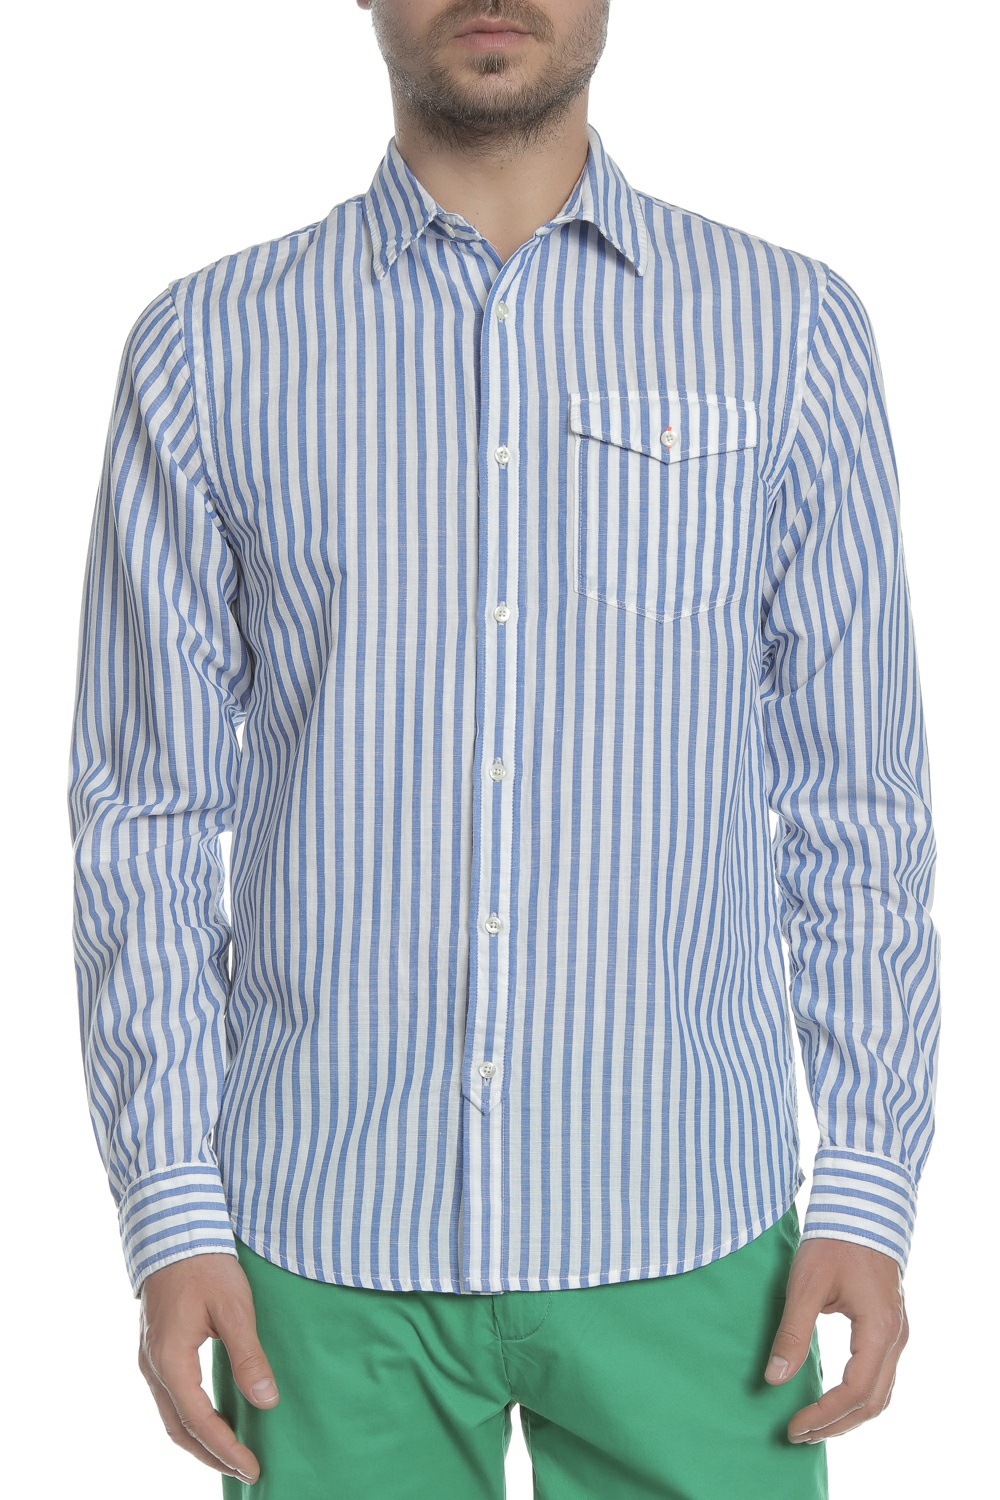 Ανδρικά/Ρούχα/Πουκάμισα/Μακρυμάνικα SCOTCH & SODA - Ανδρικό λινό πουκάμισο SCOTCH & SODA λευκό-γαλάζιο